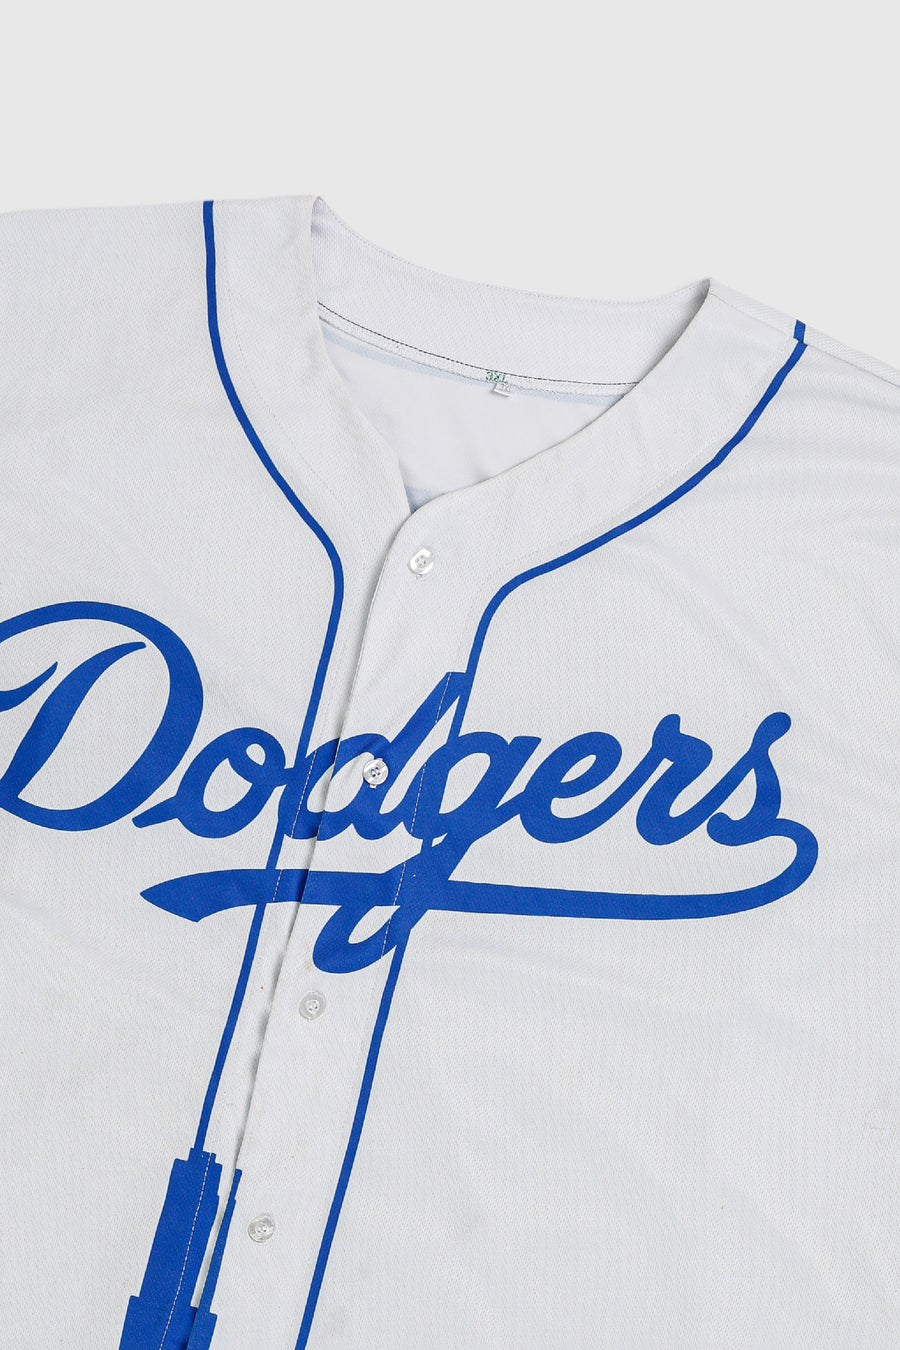 Vintage Dodgers Baseball Jersey - XXXL